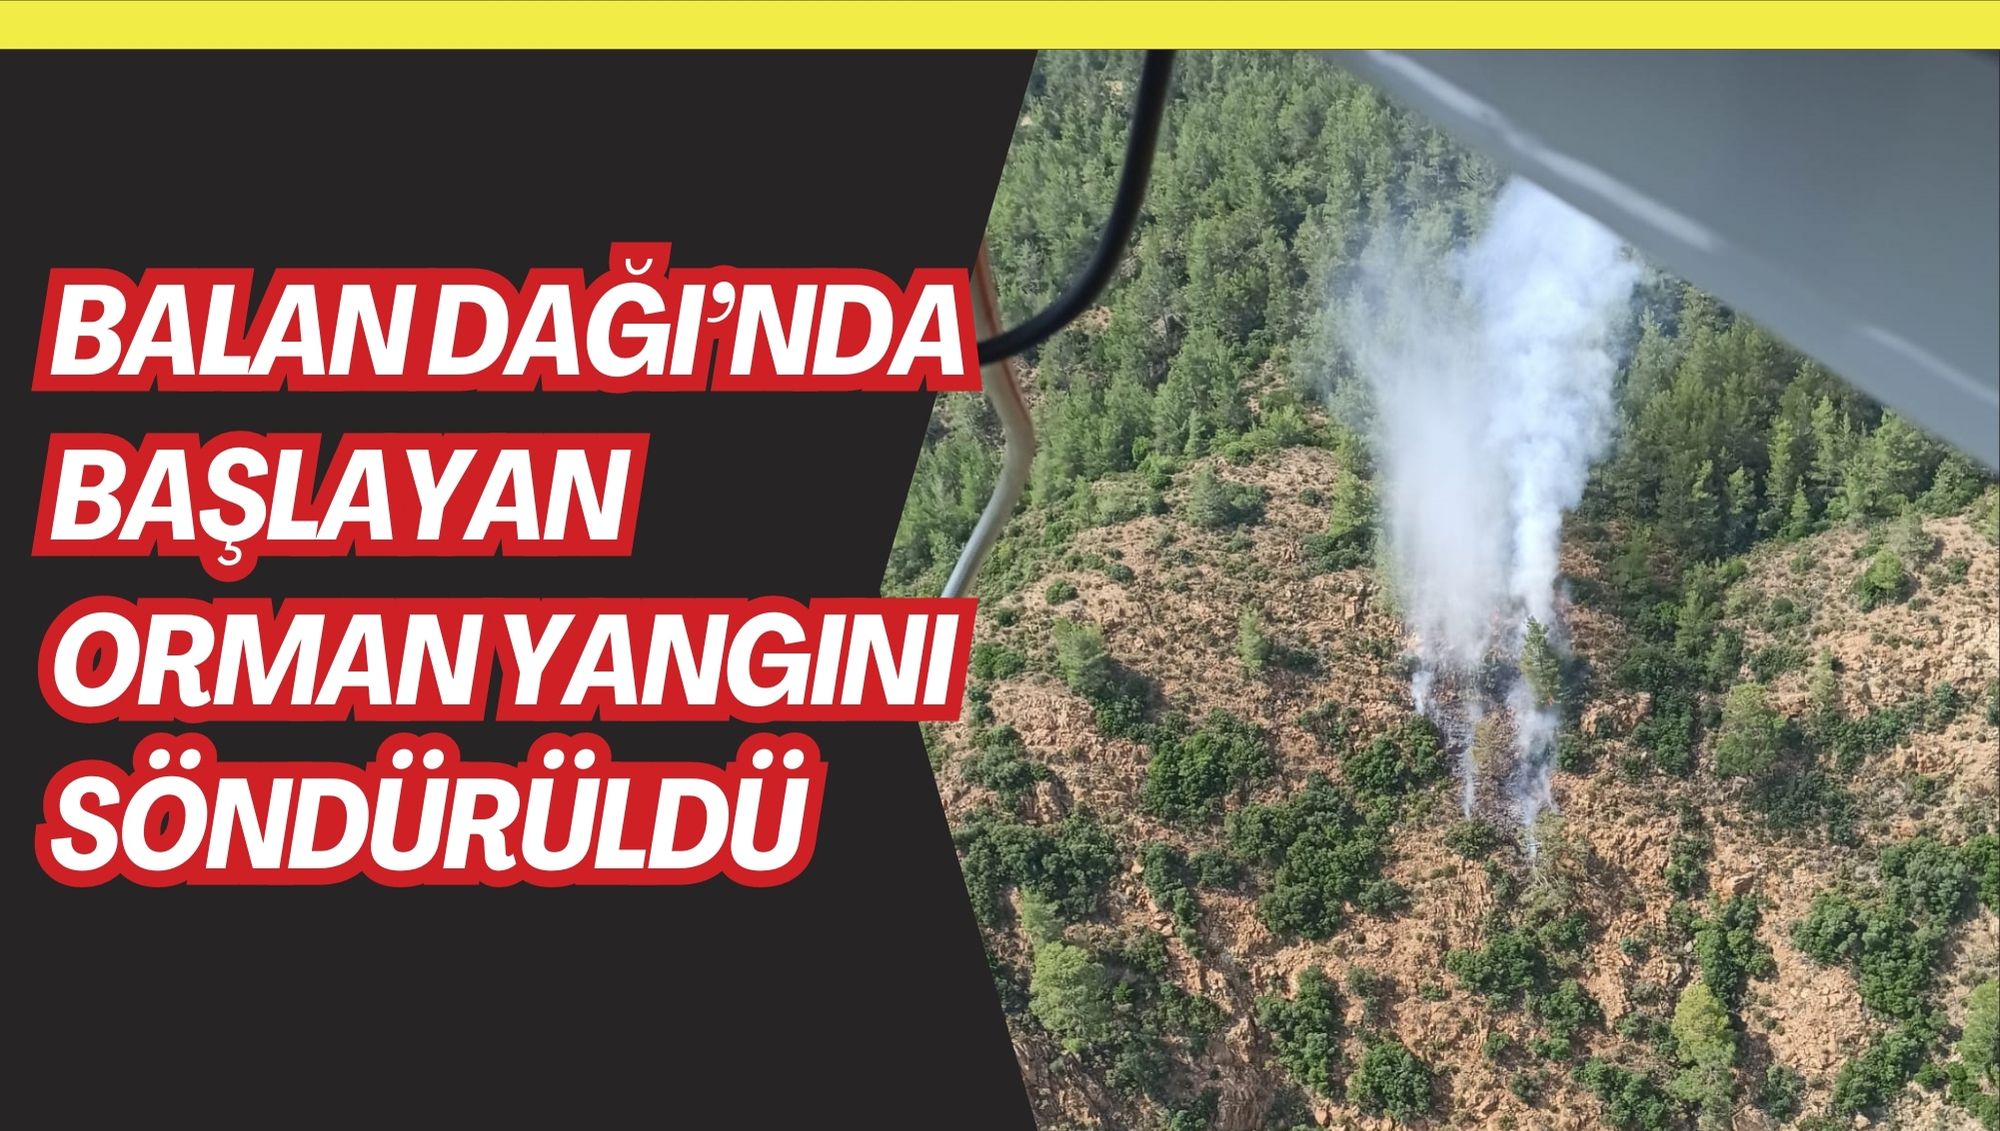 Balan Dağı’nda başlayan orman yangını söndürüldü